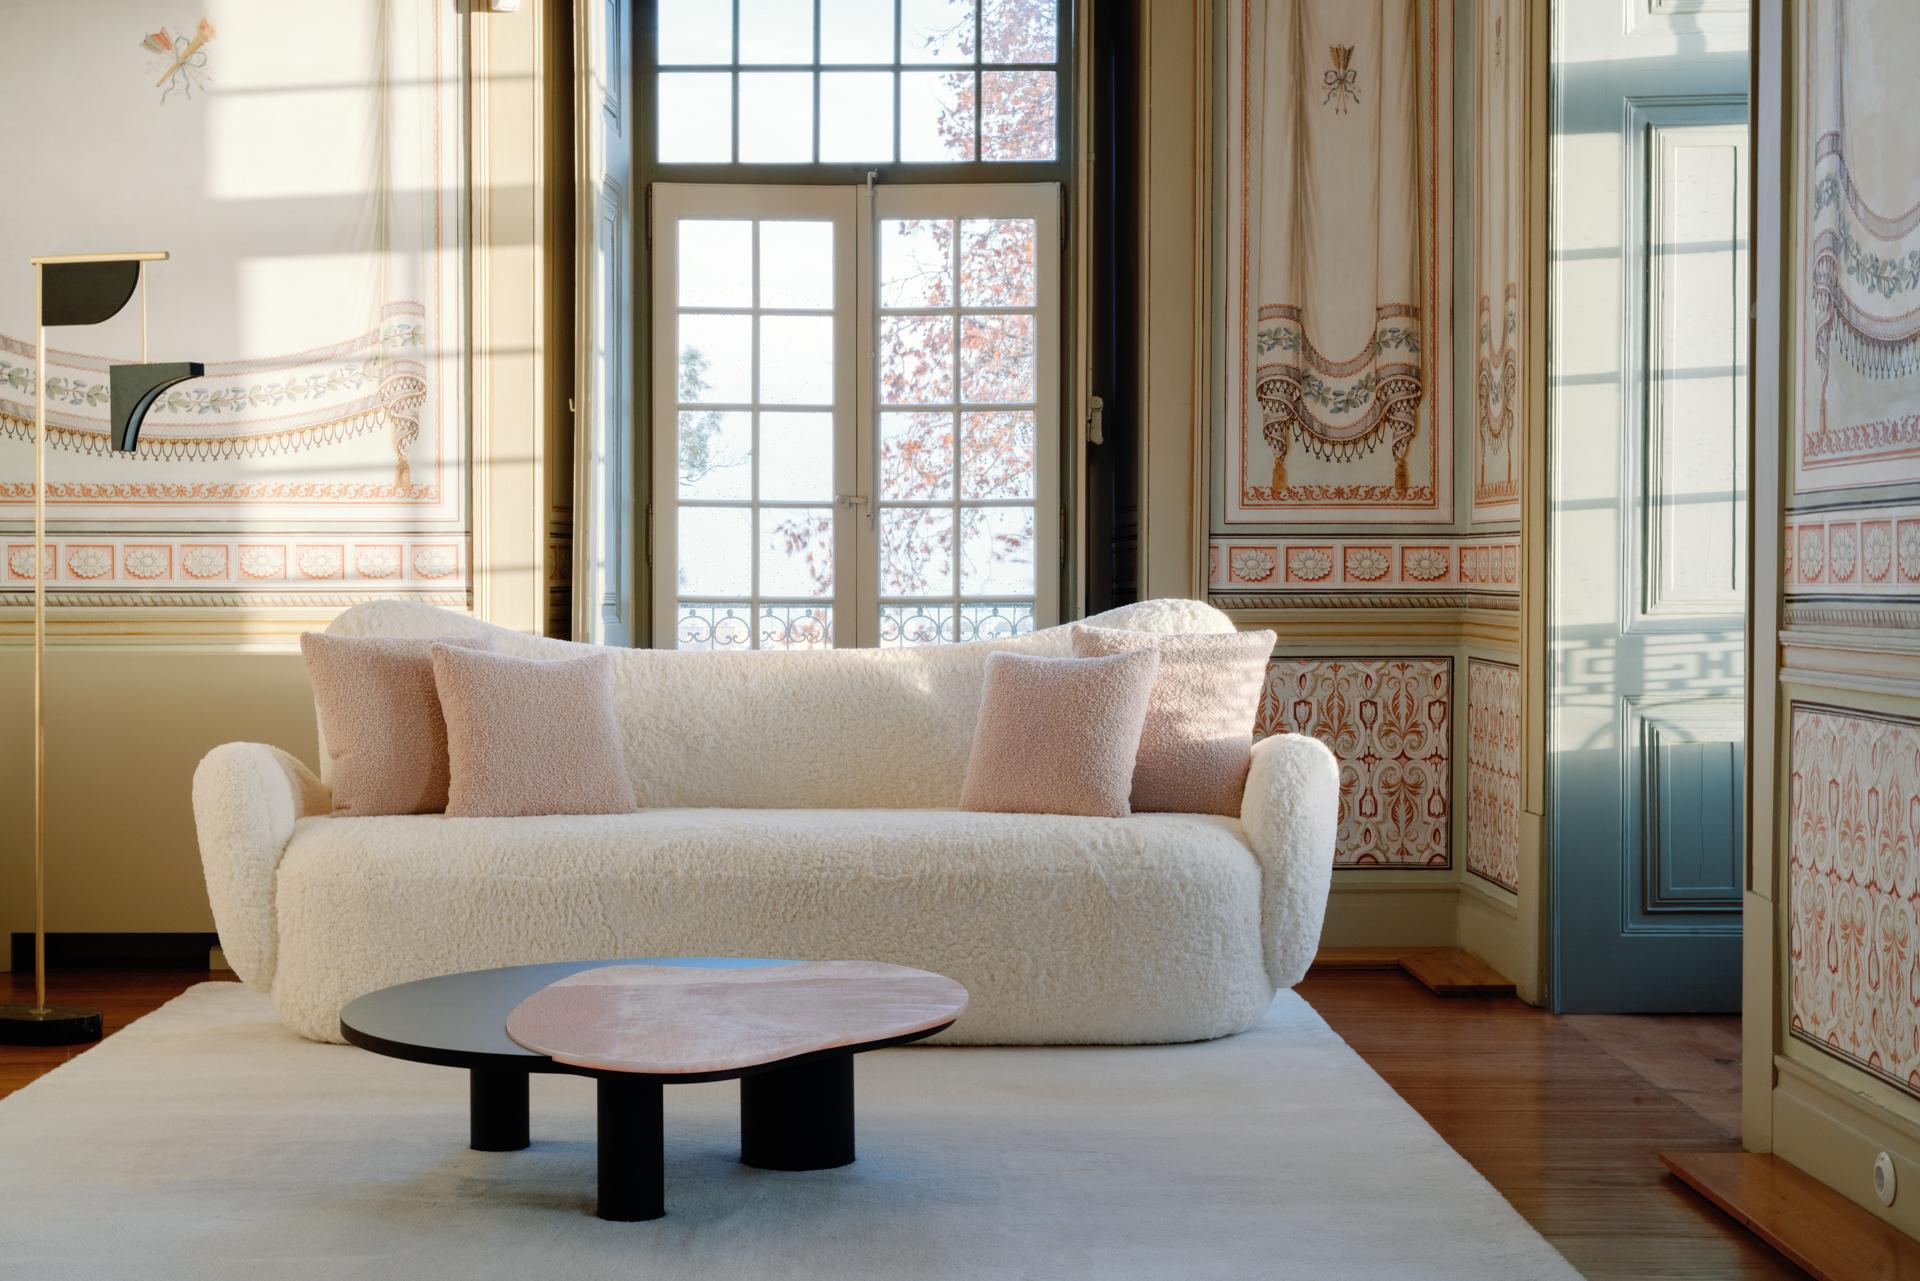 Conchula Sofa, Contemporary Collection, handgefertigt in Portugal - Europa von Greenapple.

Das von Rute Martins für die Contemporary Collection entworfene geschwungene Sofa Conchula ist ein raumbestimmendes Möbelstück mit einer auffälligen